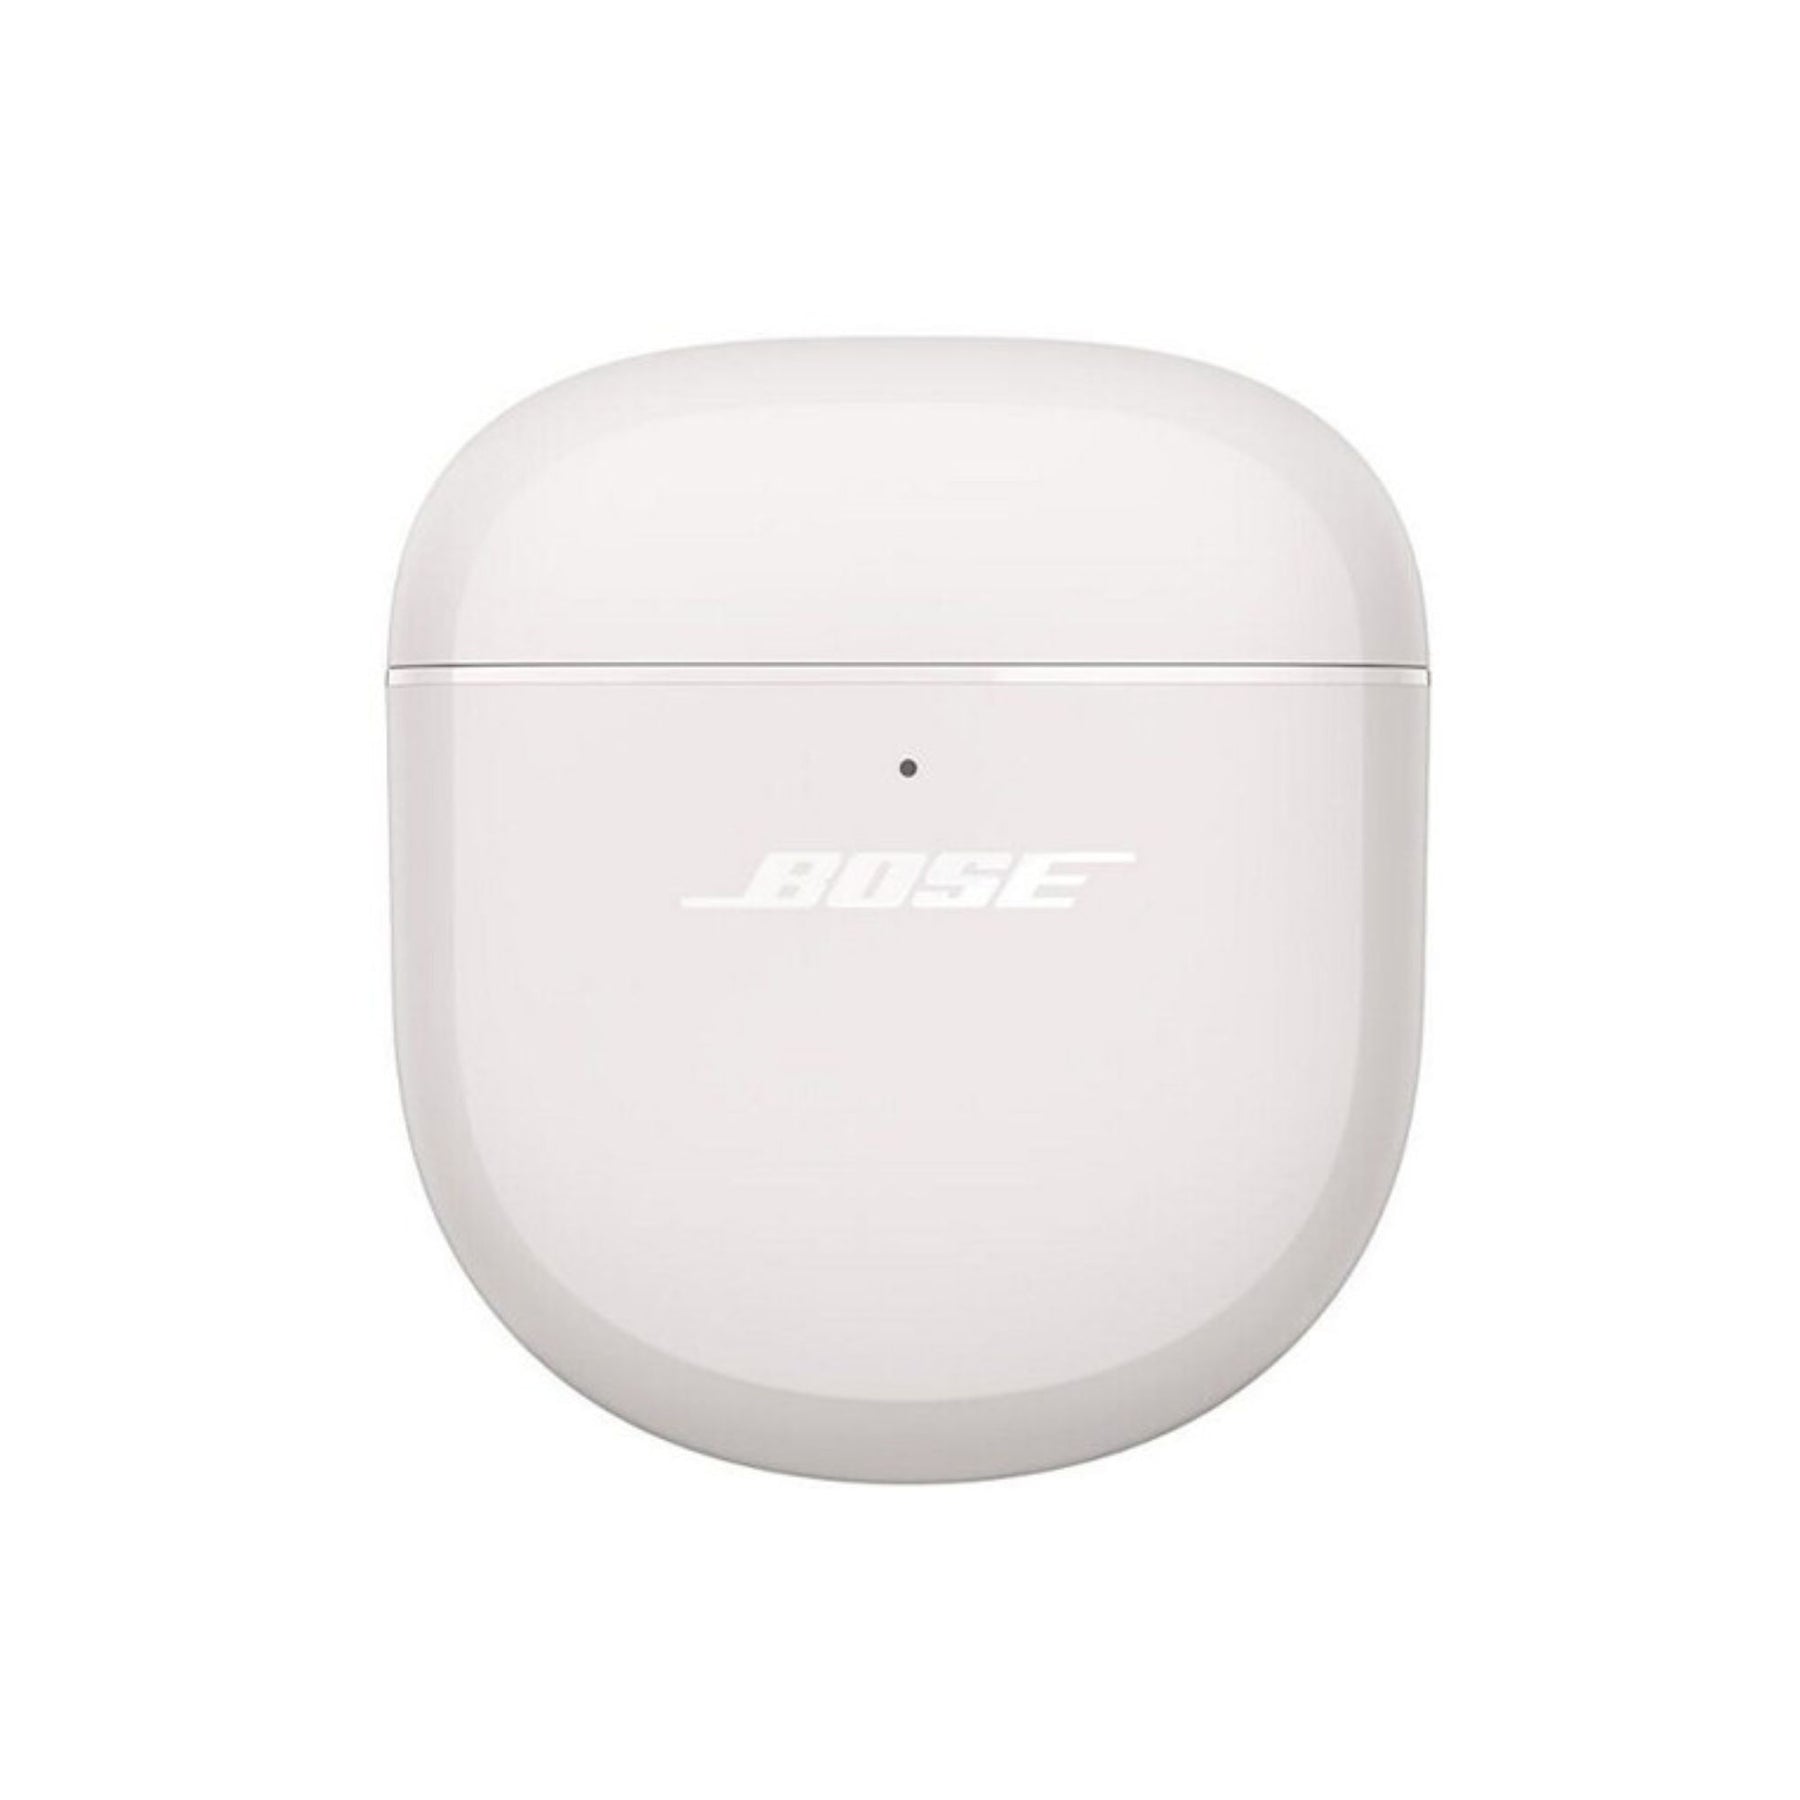 Bose QuietComfort Earbuds II Noise-Canceling True Wireless In-Ear Headphones, Bose, Wireless Headphones - AVStore.in